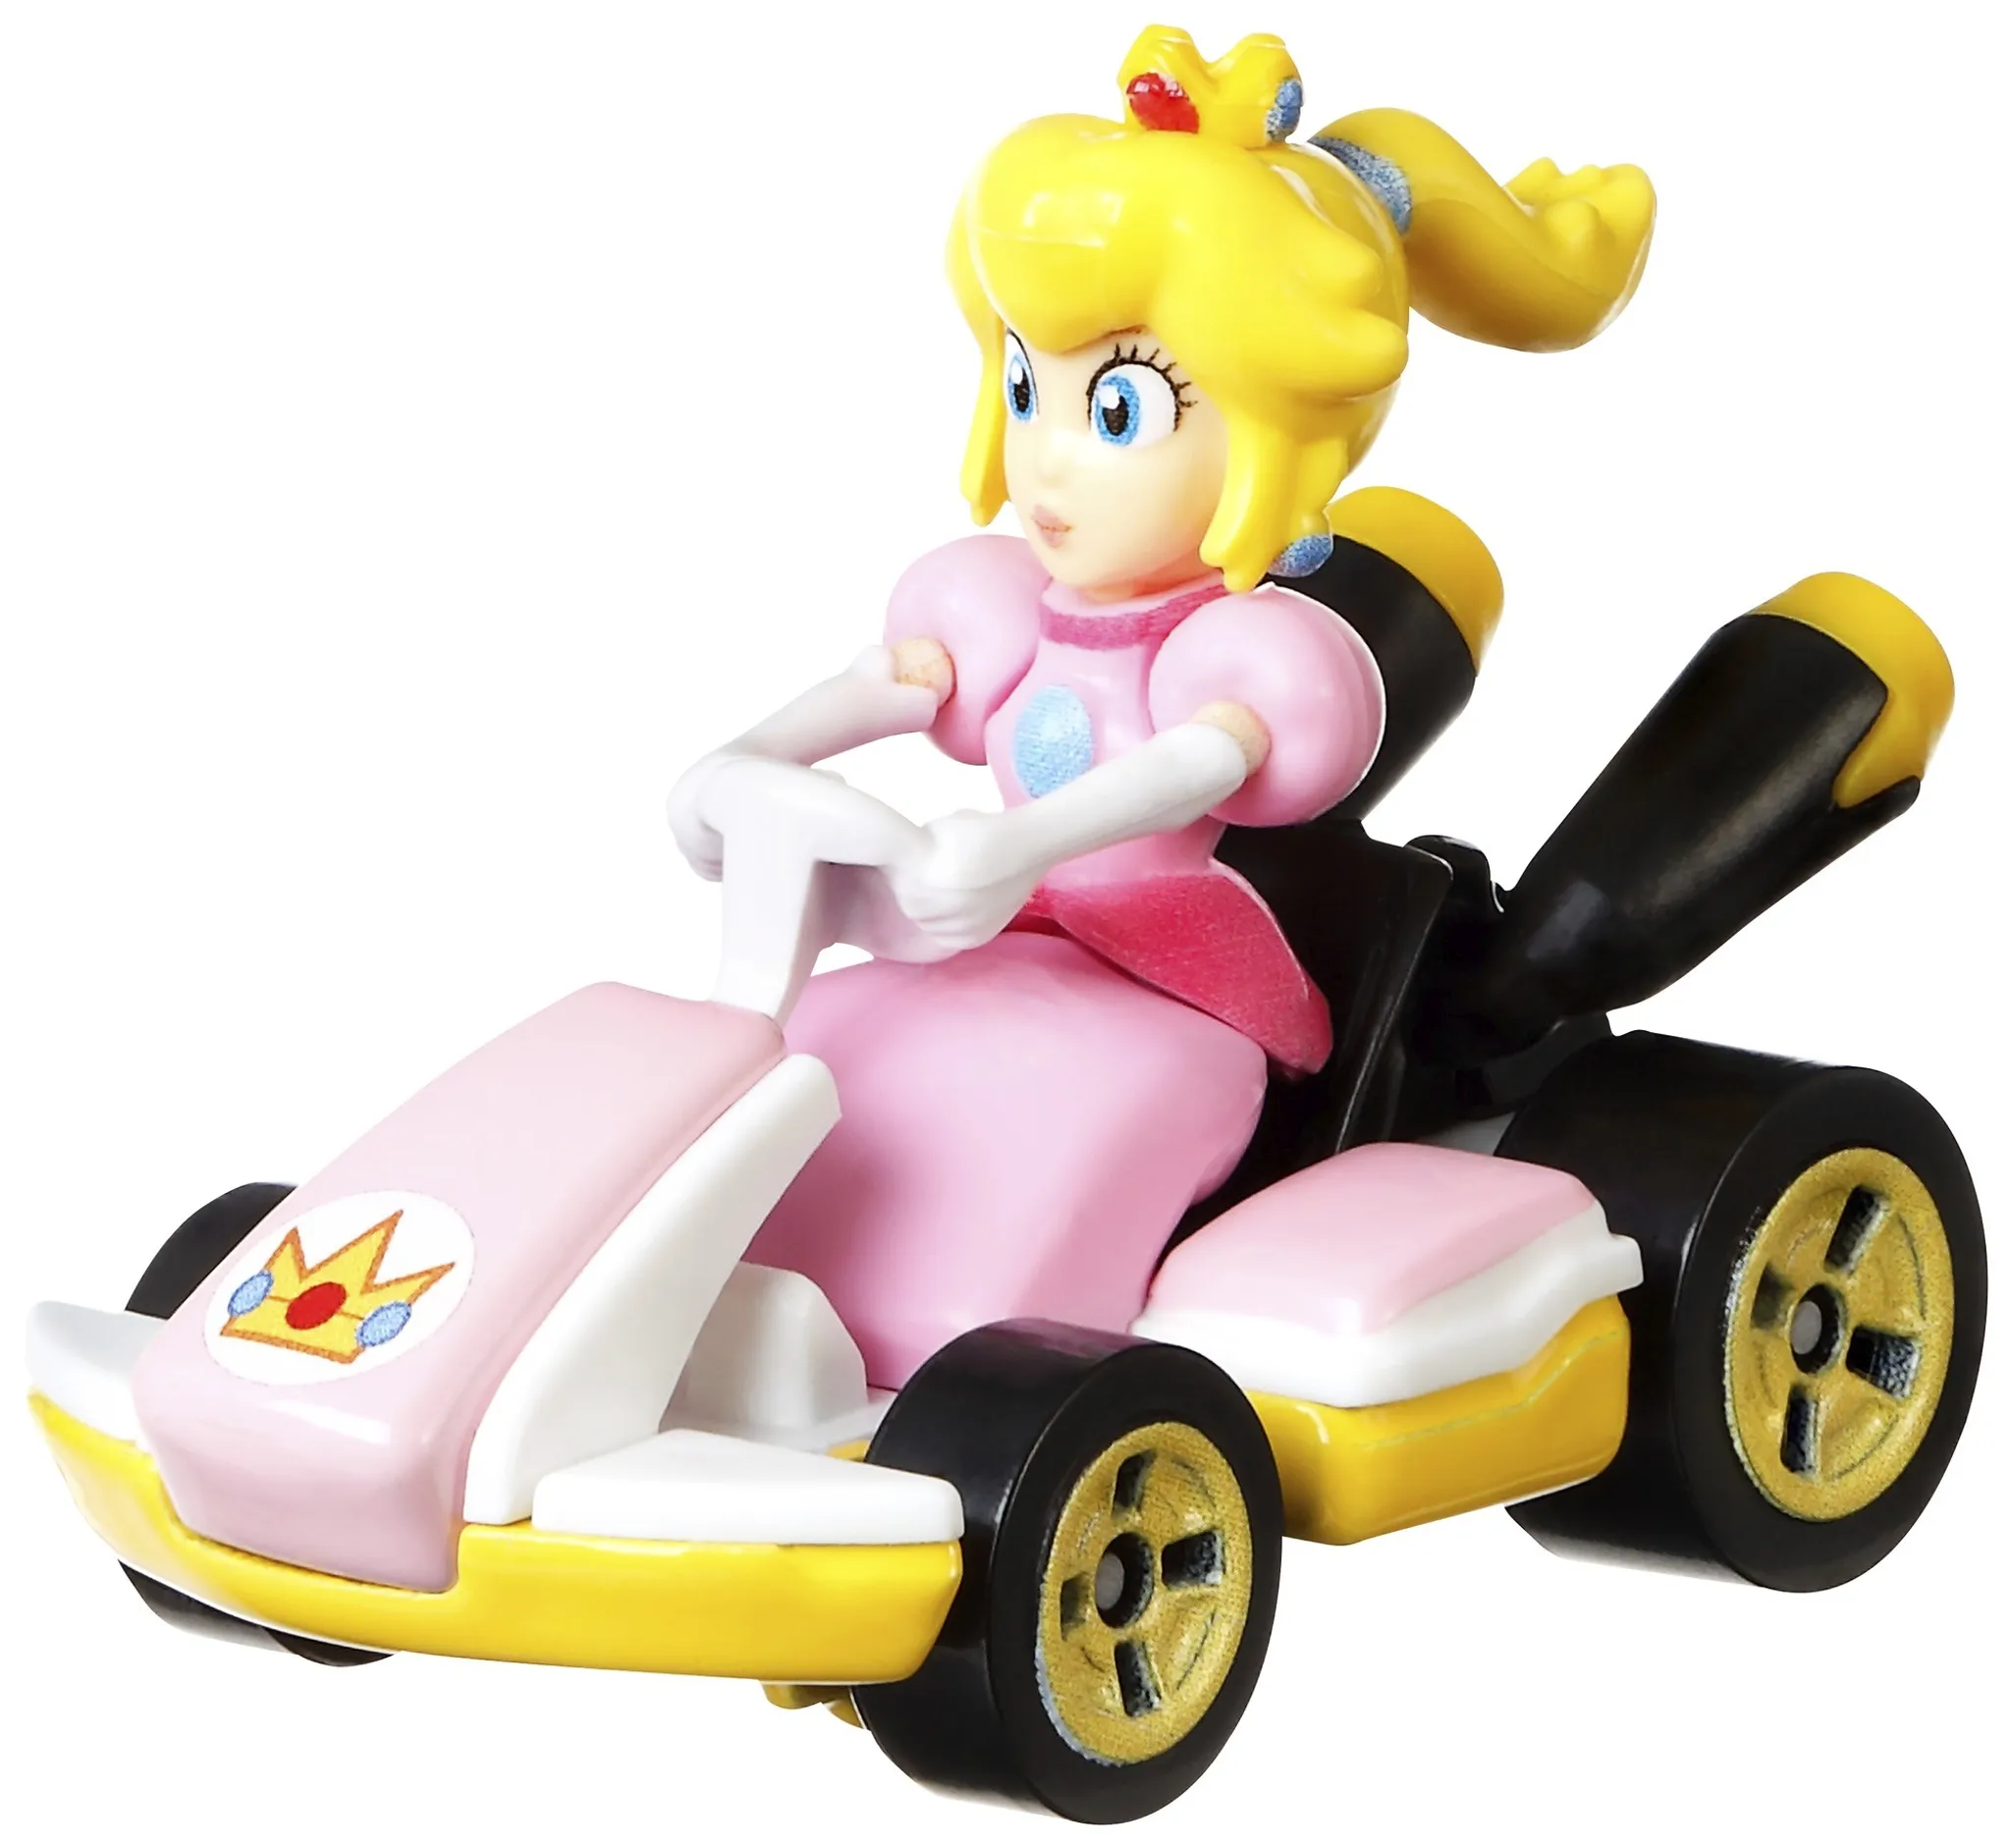 Replica Hot Kart Mario 1:64 Die-Cast Wheels